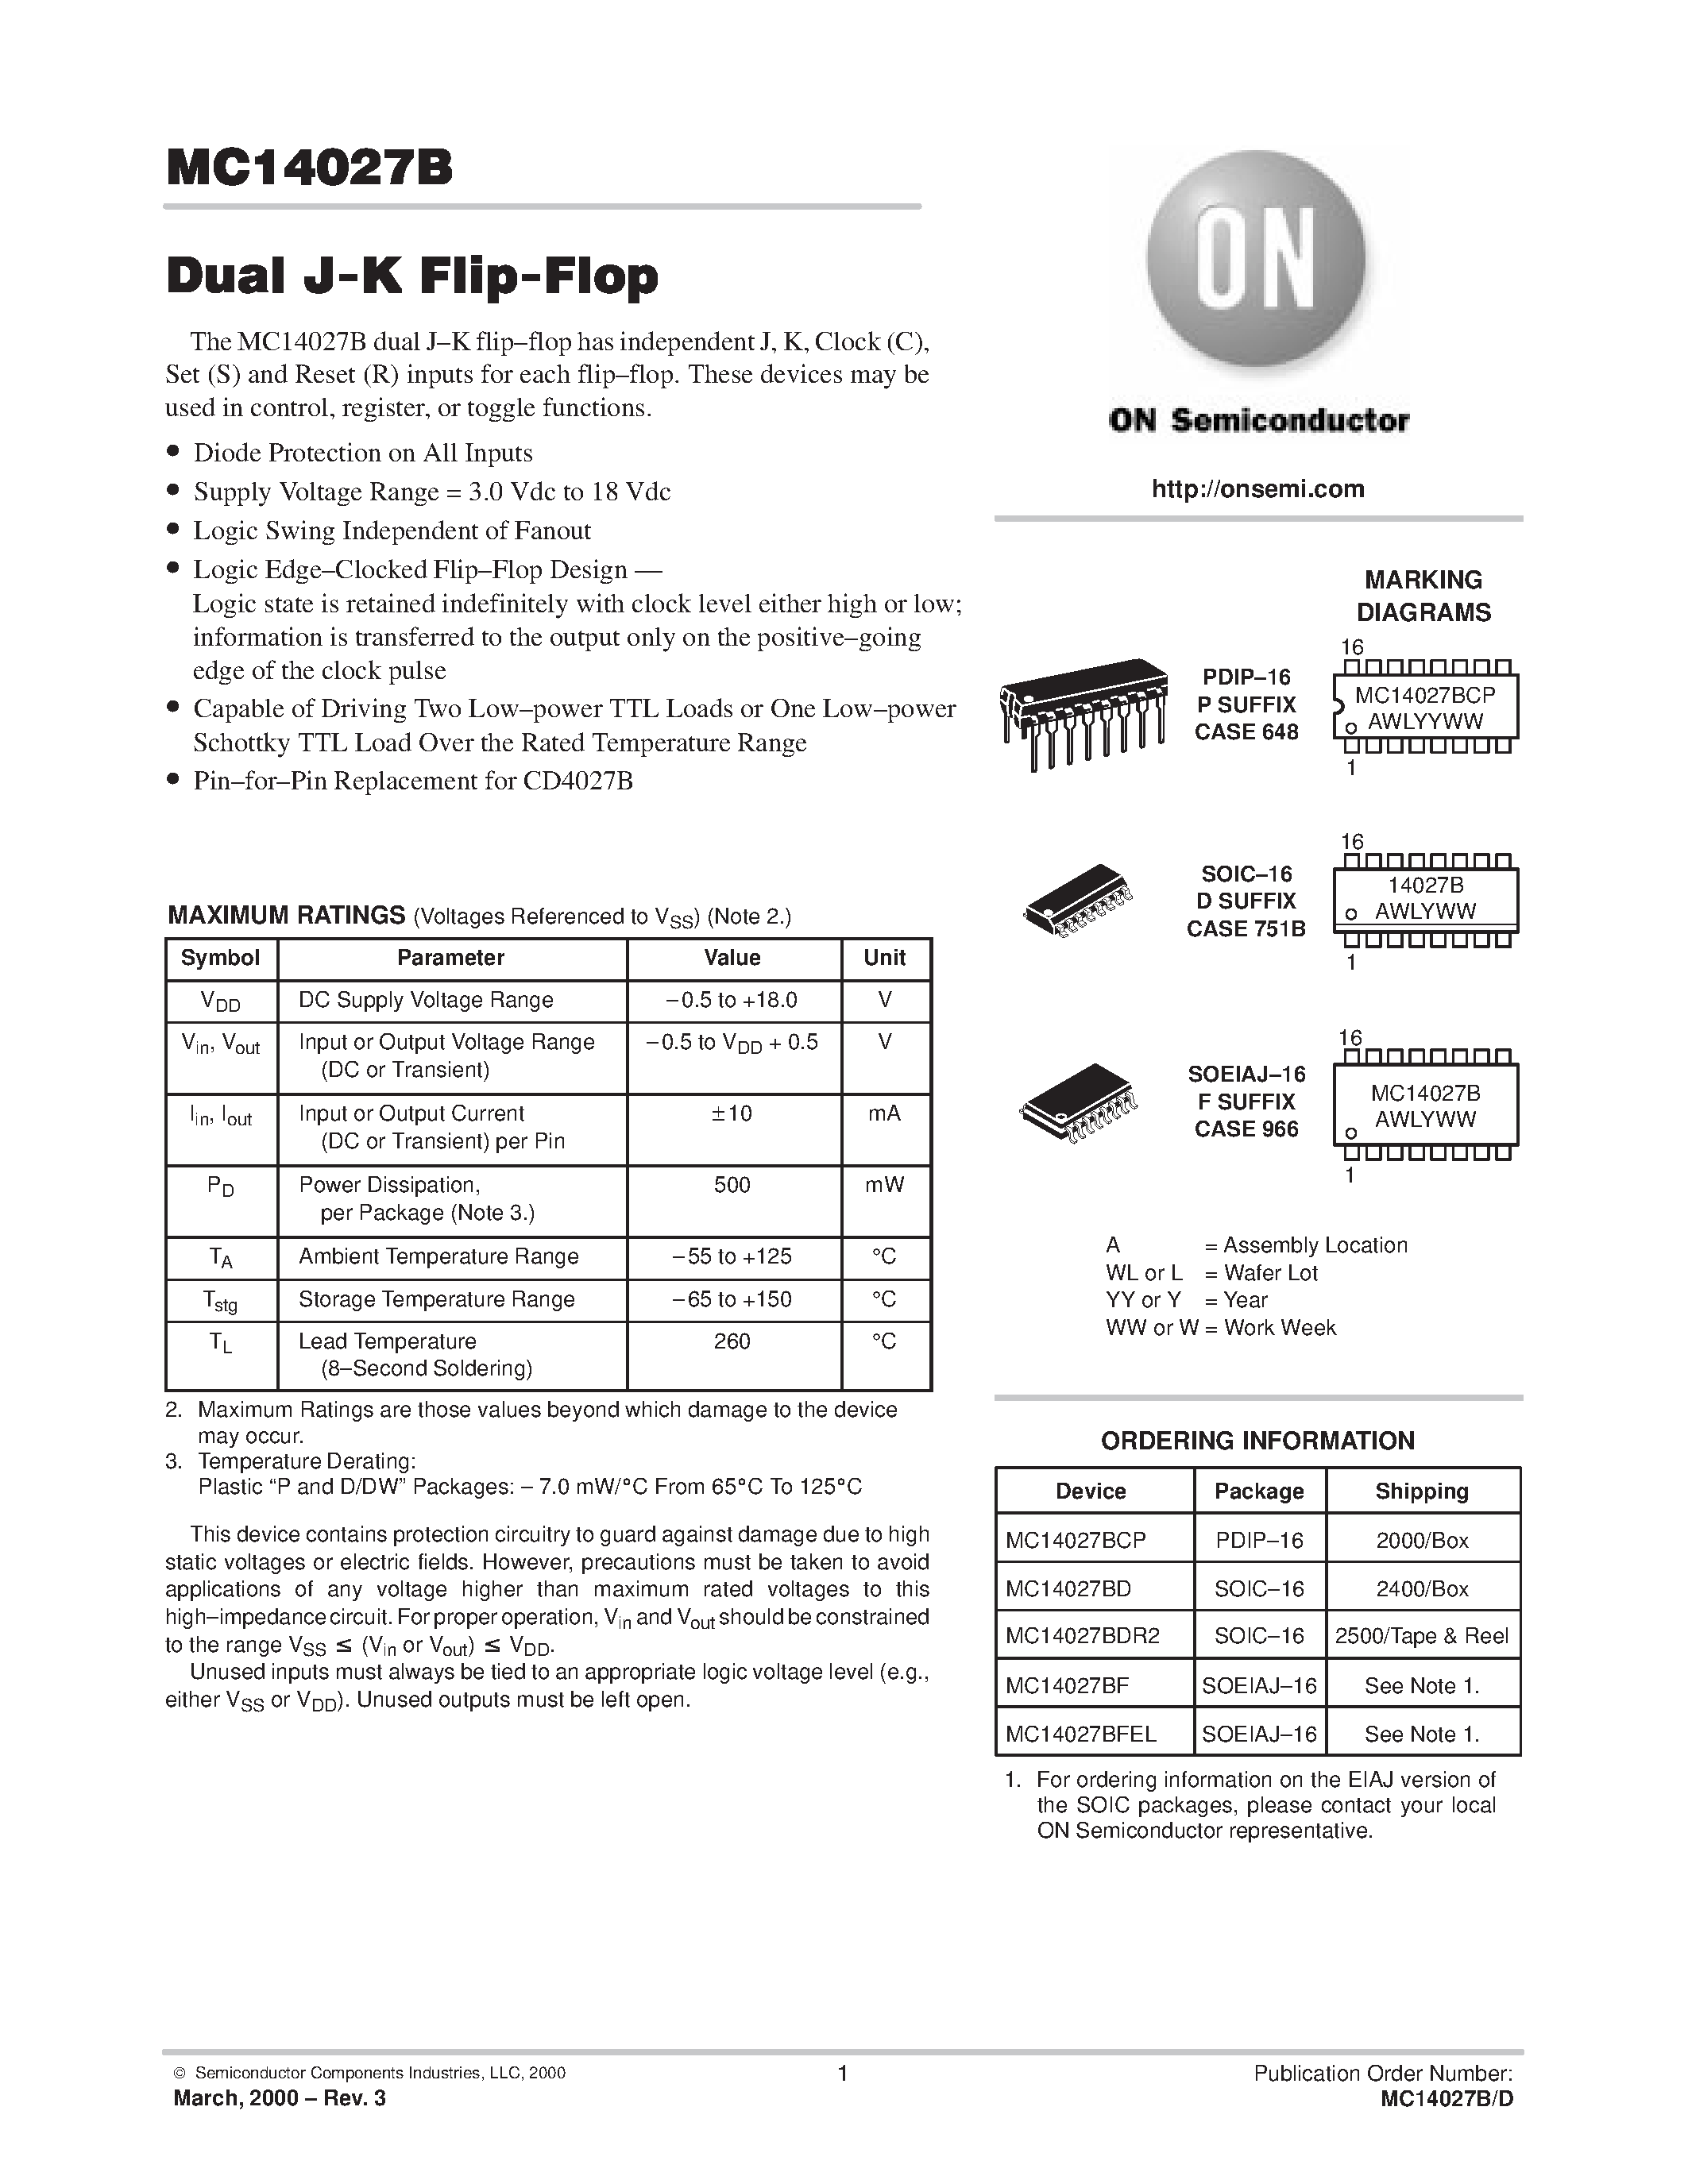 Даташит MC14027BCP - Dual J-K Flip-Flop страница 1